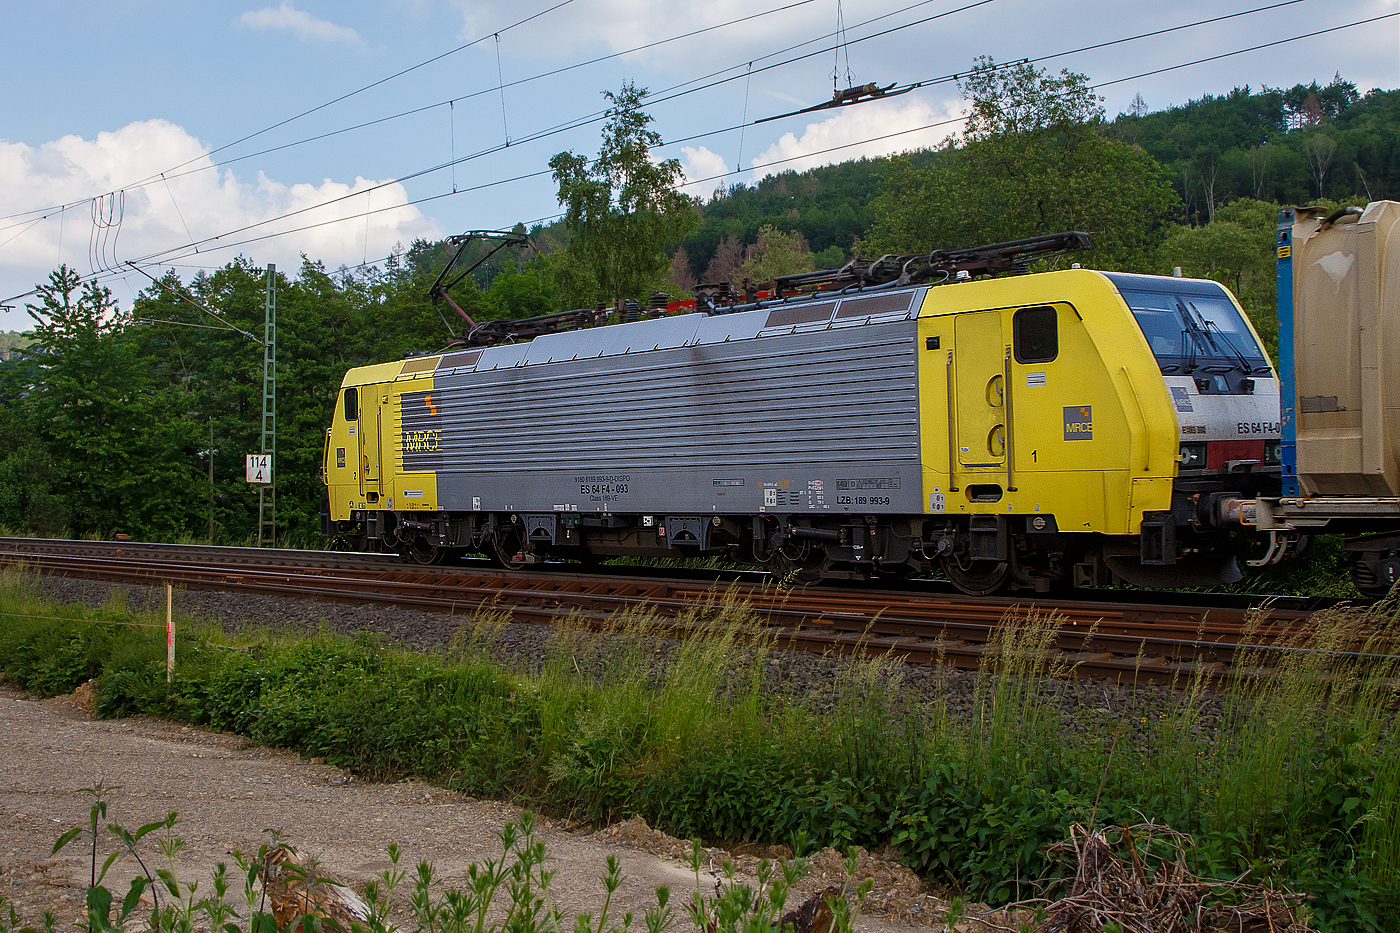 Die an die SBB Cargo International AG vermietete MRCE Dispolok ES 64 F4 - 093 bzw. 189-993 / LZB 189 993-9 (91 80 6189 993-9 D-DISPO, Class 189-VE) fährt am 09.06.2021, mit einem KLV-Zug auf der Siegstrecke (KBS 460) durch Brachbach in Richtung Siegen.

Die Siemens EuroSprinter wurde 2004 von SIEMENS in München-Allach unter der Fabriknummer 20723  gebaut.

Die BR 189 (Siemens ES64F4) hat eine Vier-Stromsystem-Ausstattung. Sie ist in allen vier in Europa üblichen Bahnstromsystemen einsetzbar. Diese hier hat die Variante E und besitzt die Zugbeeinflussungssysteme LZB/PZB, ETCS, SCMT, ZUB, INTEGRA und ATB für den Einsatz in Deutschland, Österreich, Schweiz, Italien, Niederlande, Slowenien und Rumänien.
Die Stromabnehmerbestückung ist folgende:
Pos. 1: CH, FR (AC), LU (AC), BE (AC)
Pos. 2: IT, SI, HR (DC)
Pos. 3: NL (DC), CZ (DC), FR (DC), SK, LU (DC)
Pos. 4: DE, AT, NL (AC), DK, CZ (AC), HR (AC), HU, RO